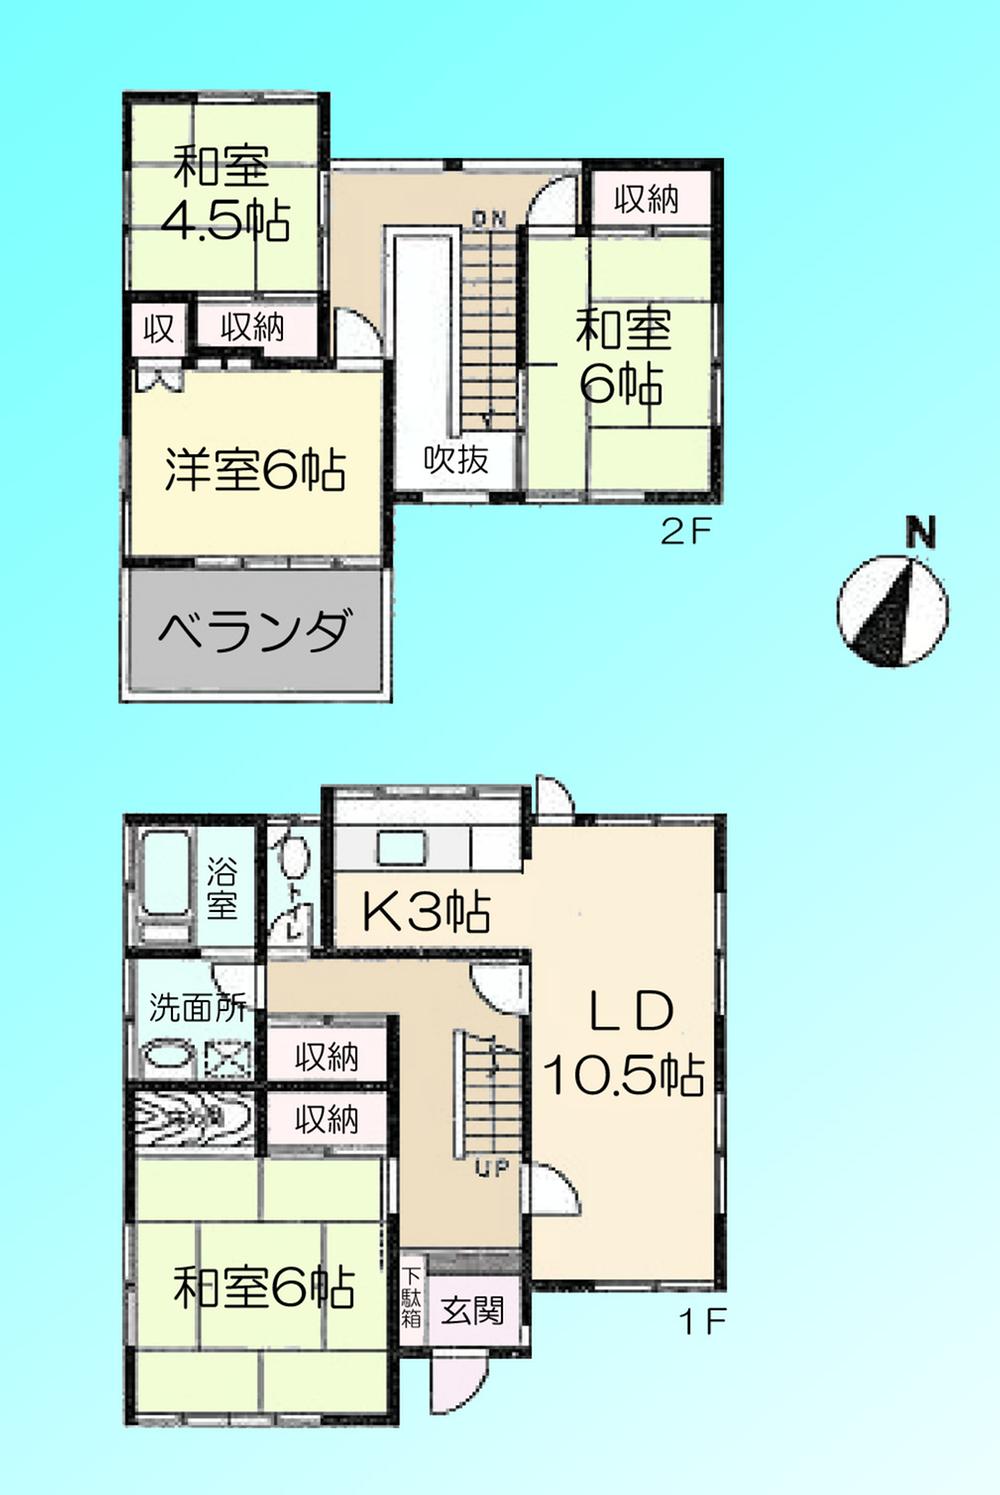 Floor plan. 15.8 million yen, 4LDK, Land area 144.48 sq m , Building area 103.51 sq m